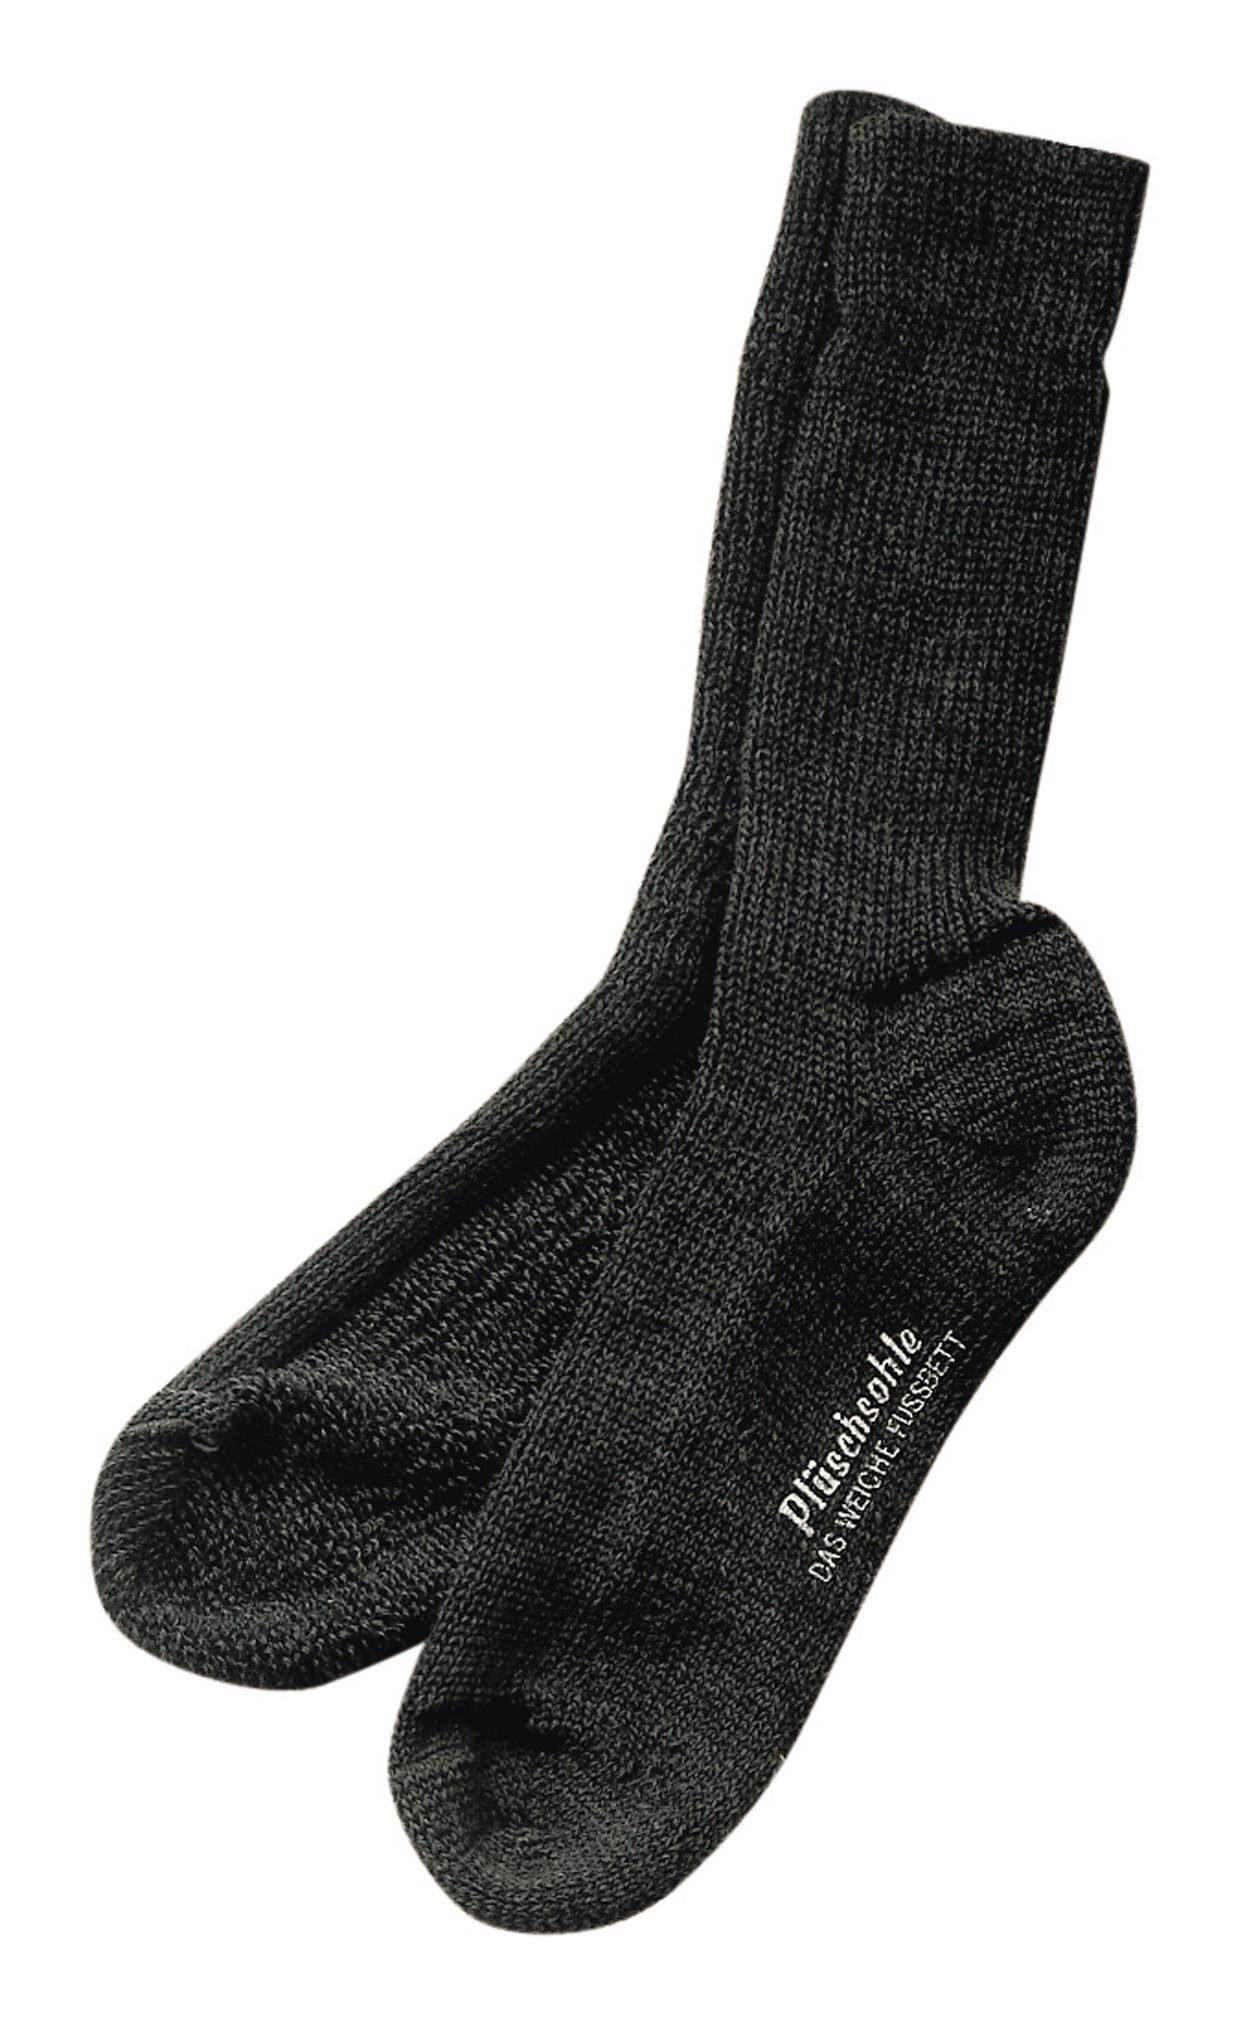 fortis Socken Gesundheitssocke Größe 43 - 44 anthrazit